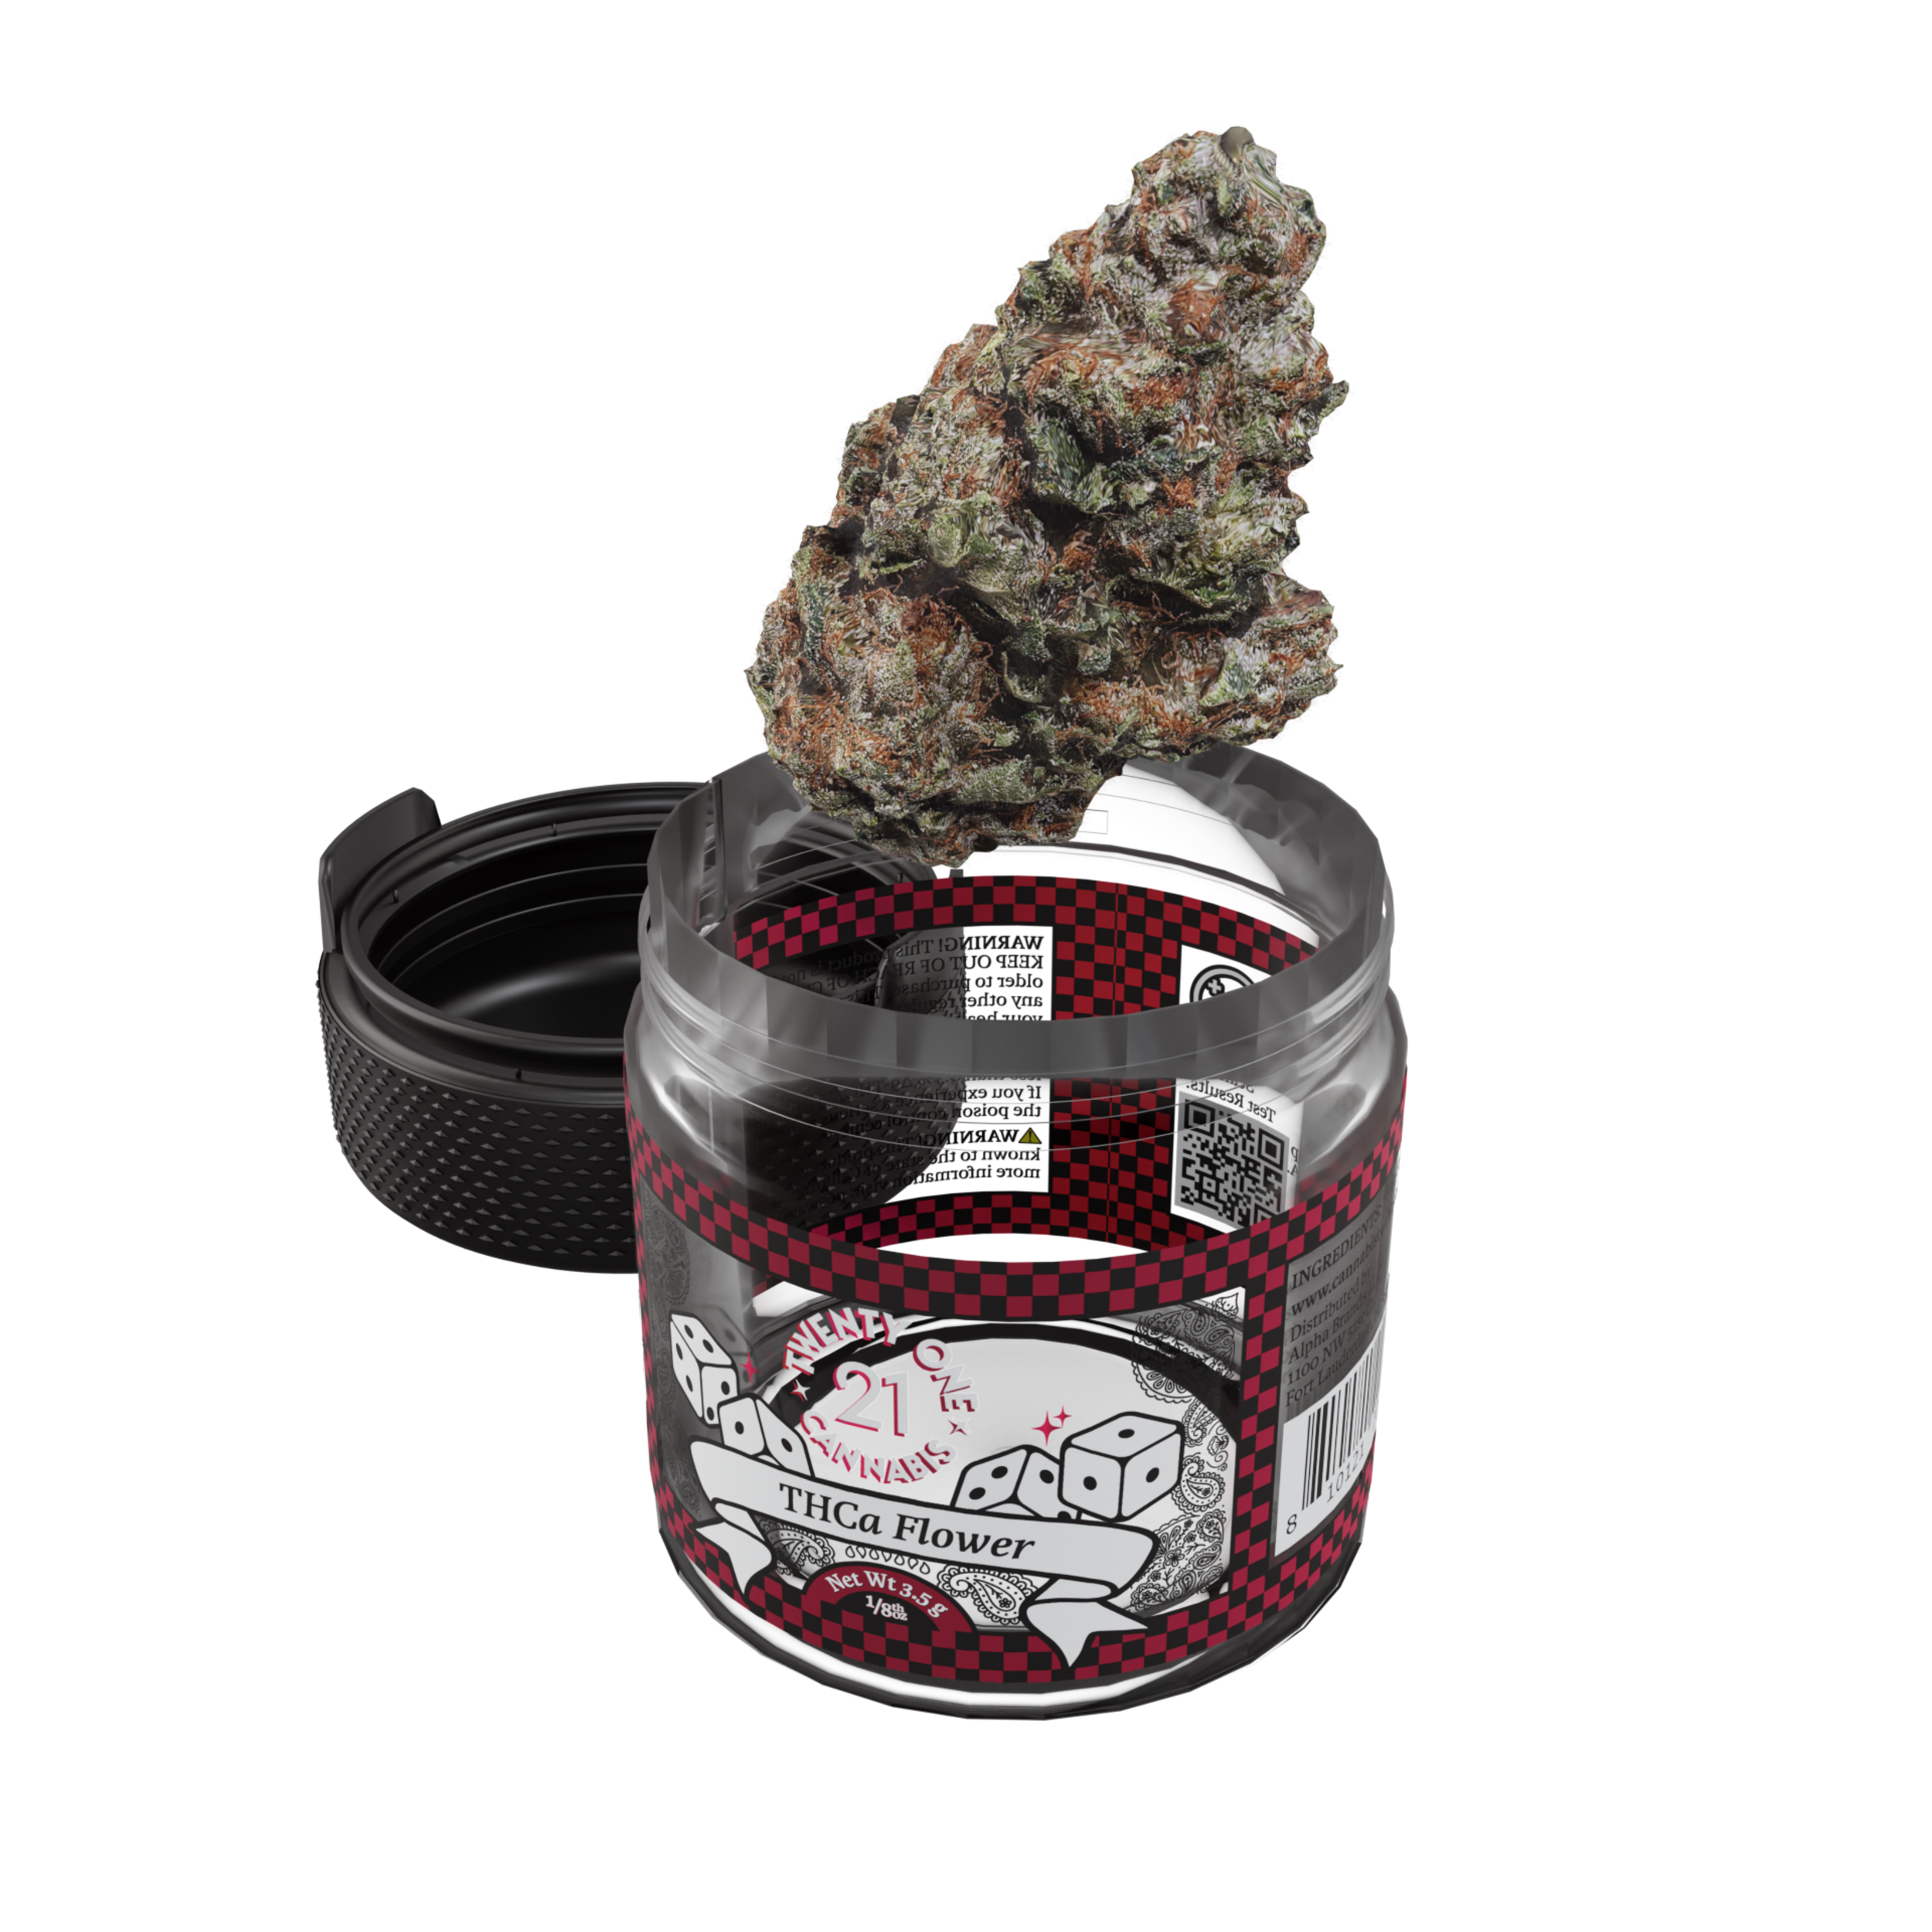 Twenty One Cannabis - THCA Flower - 3.5g Jar - 6ct. POP